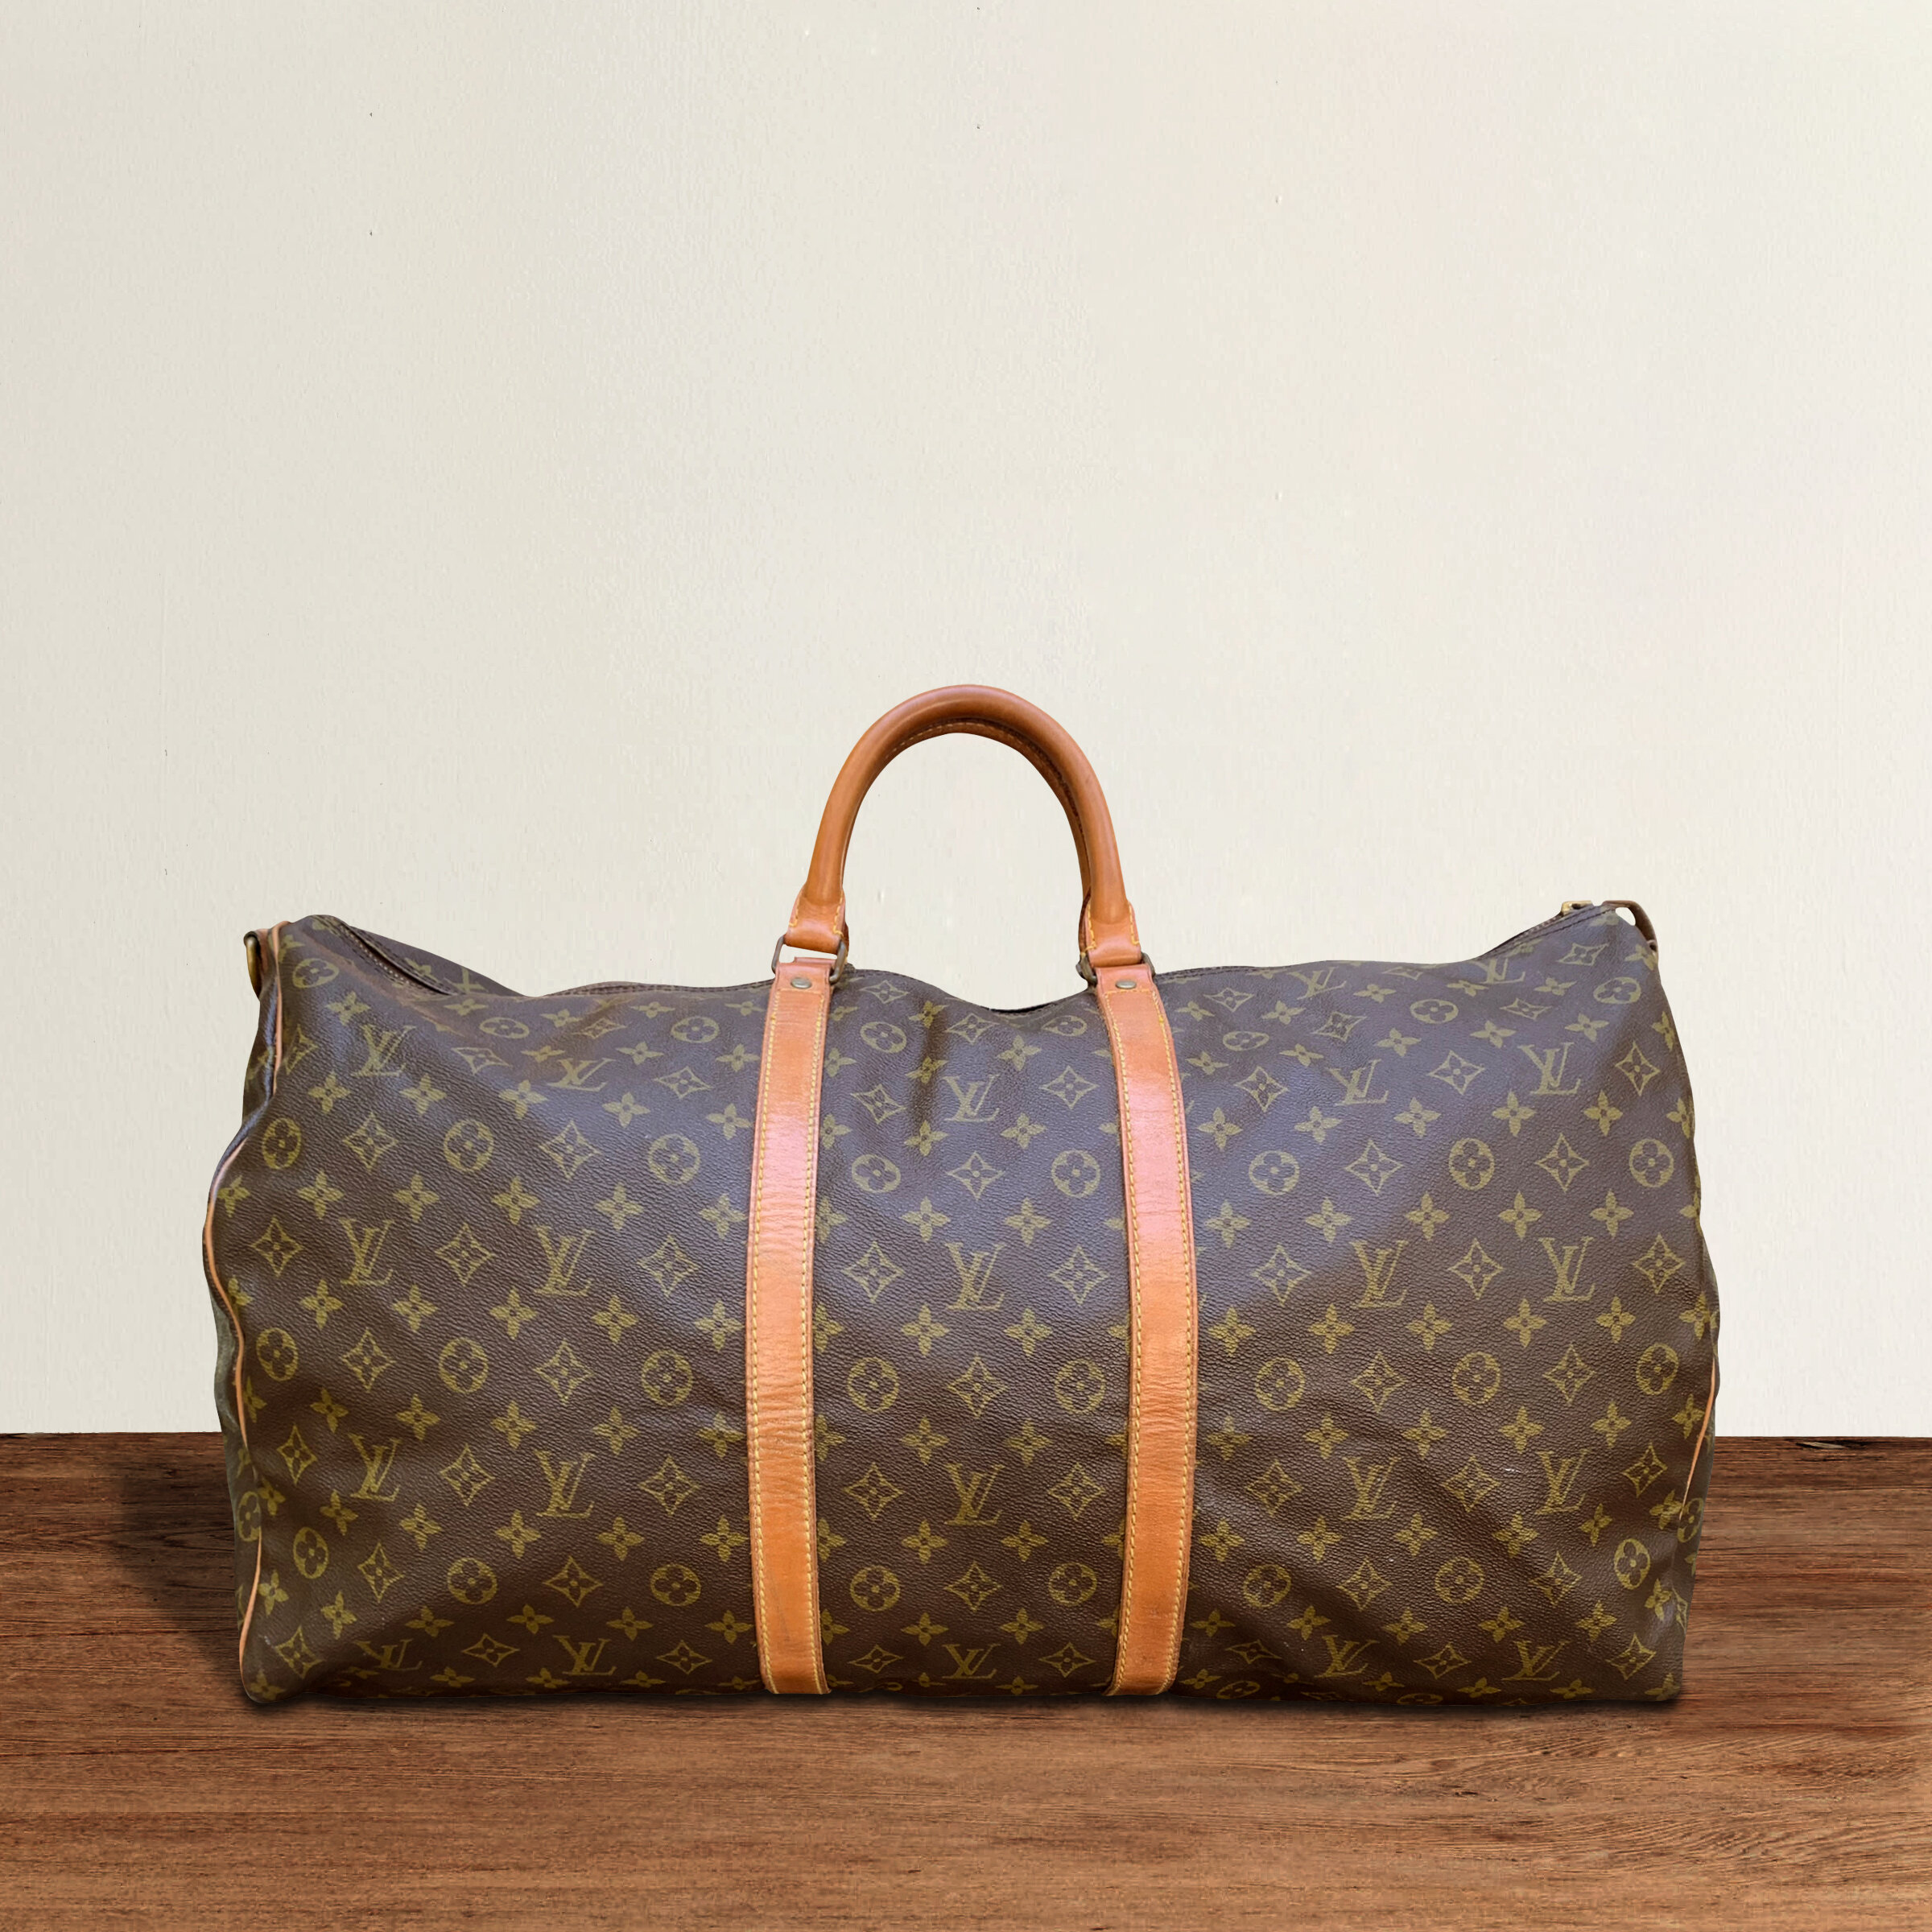 Vintage Louis Vuitton Duffle Bag — RIGHT | PROPER